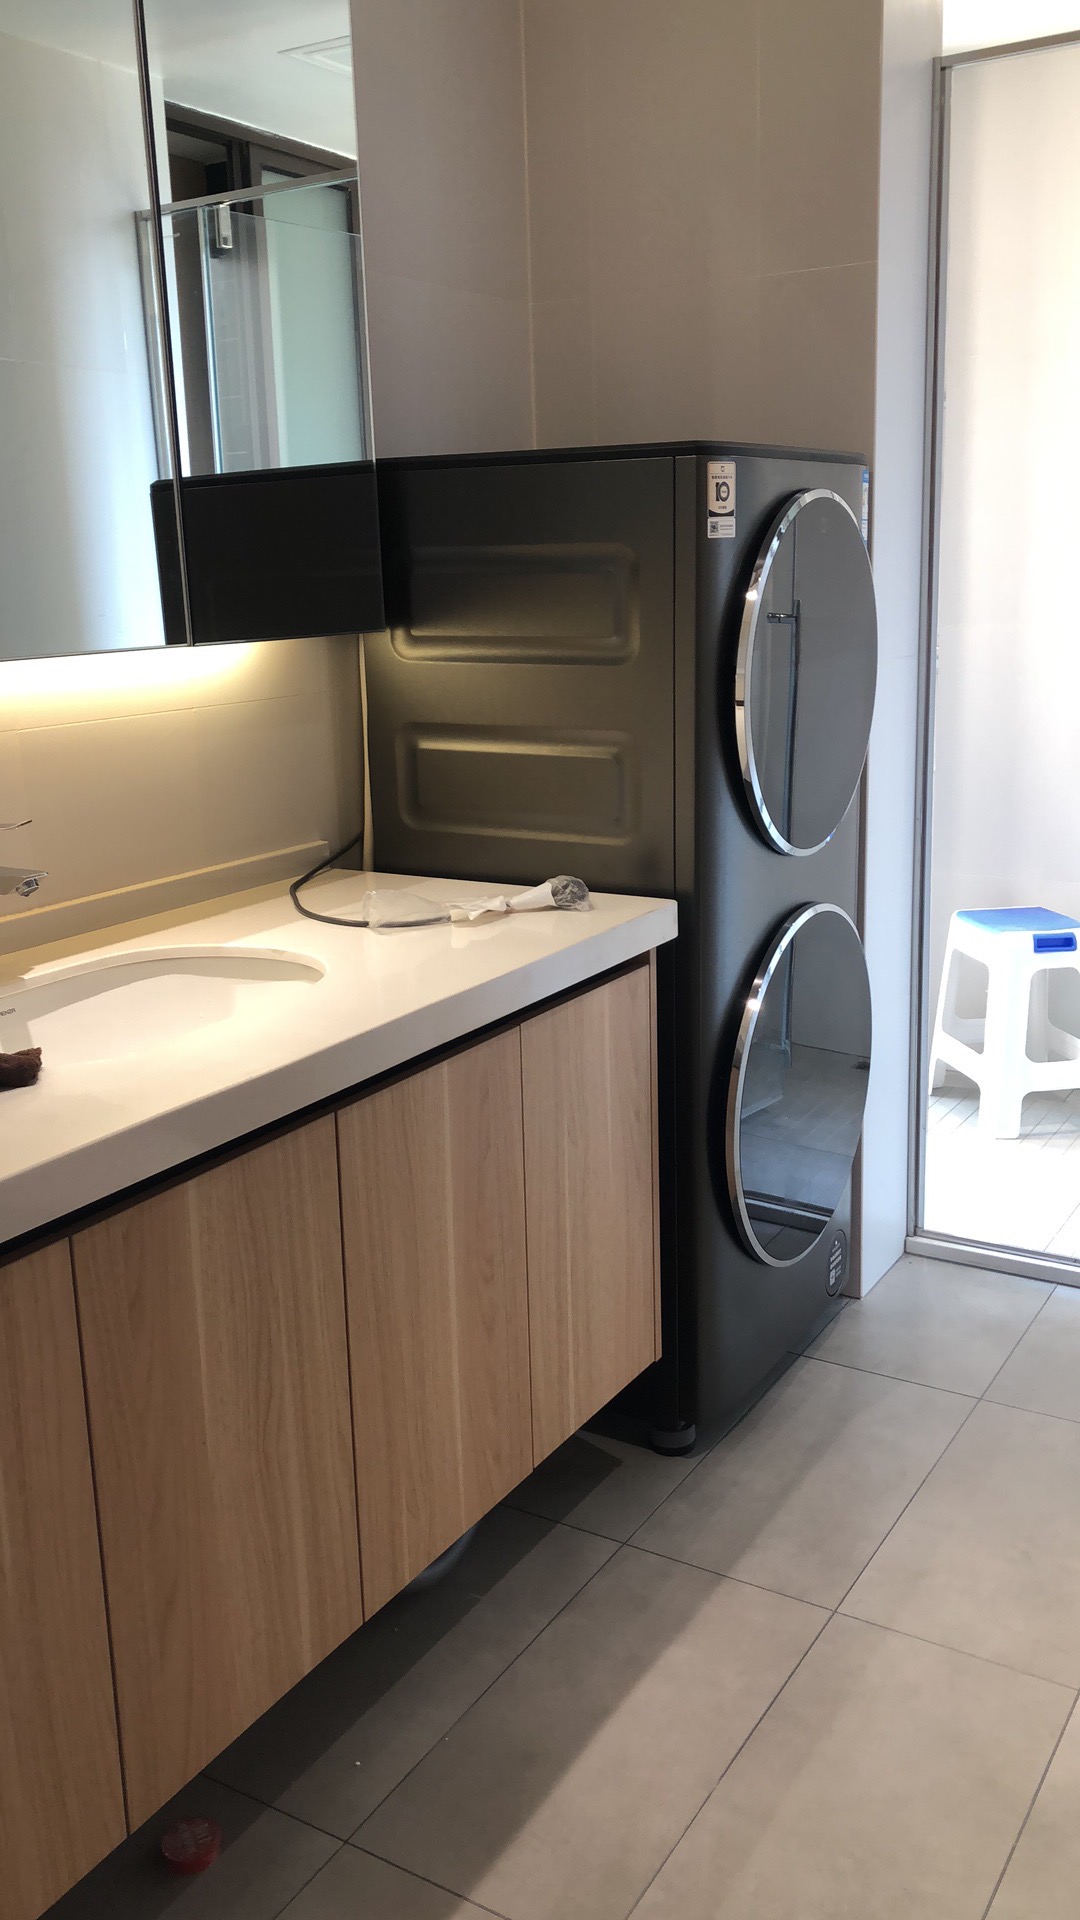 Máy giặt XM21 Mijia tại nhà khách